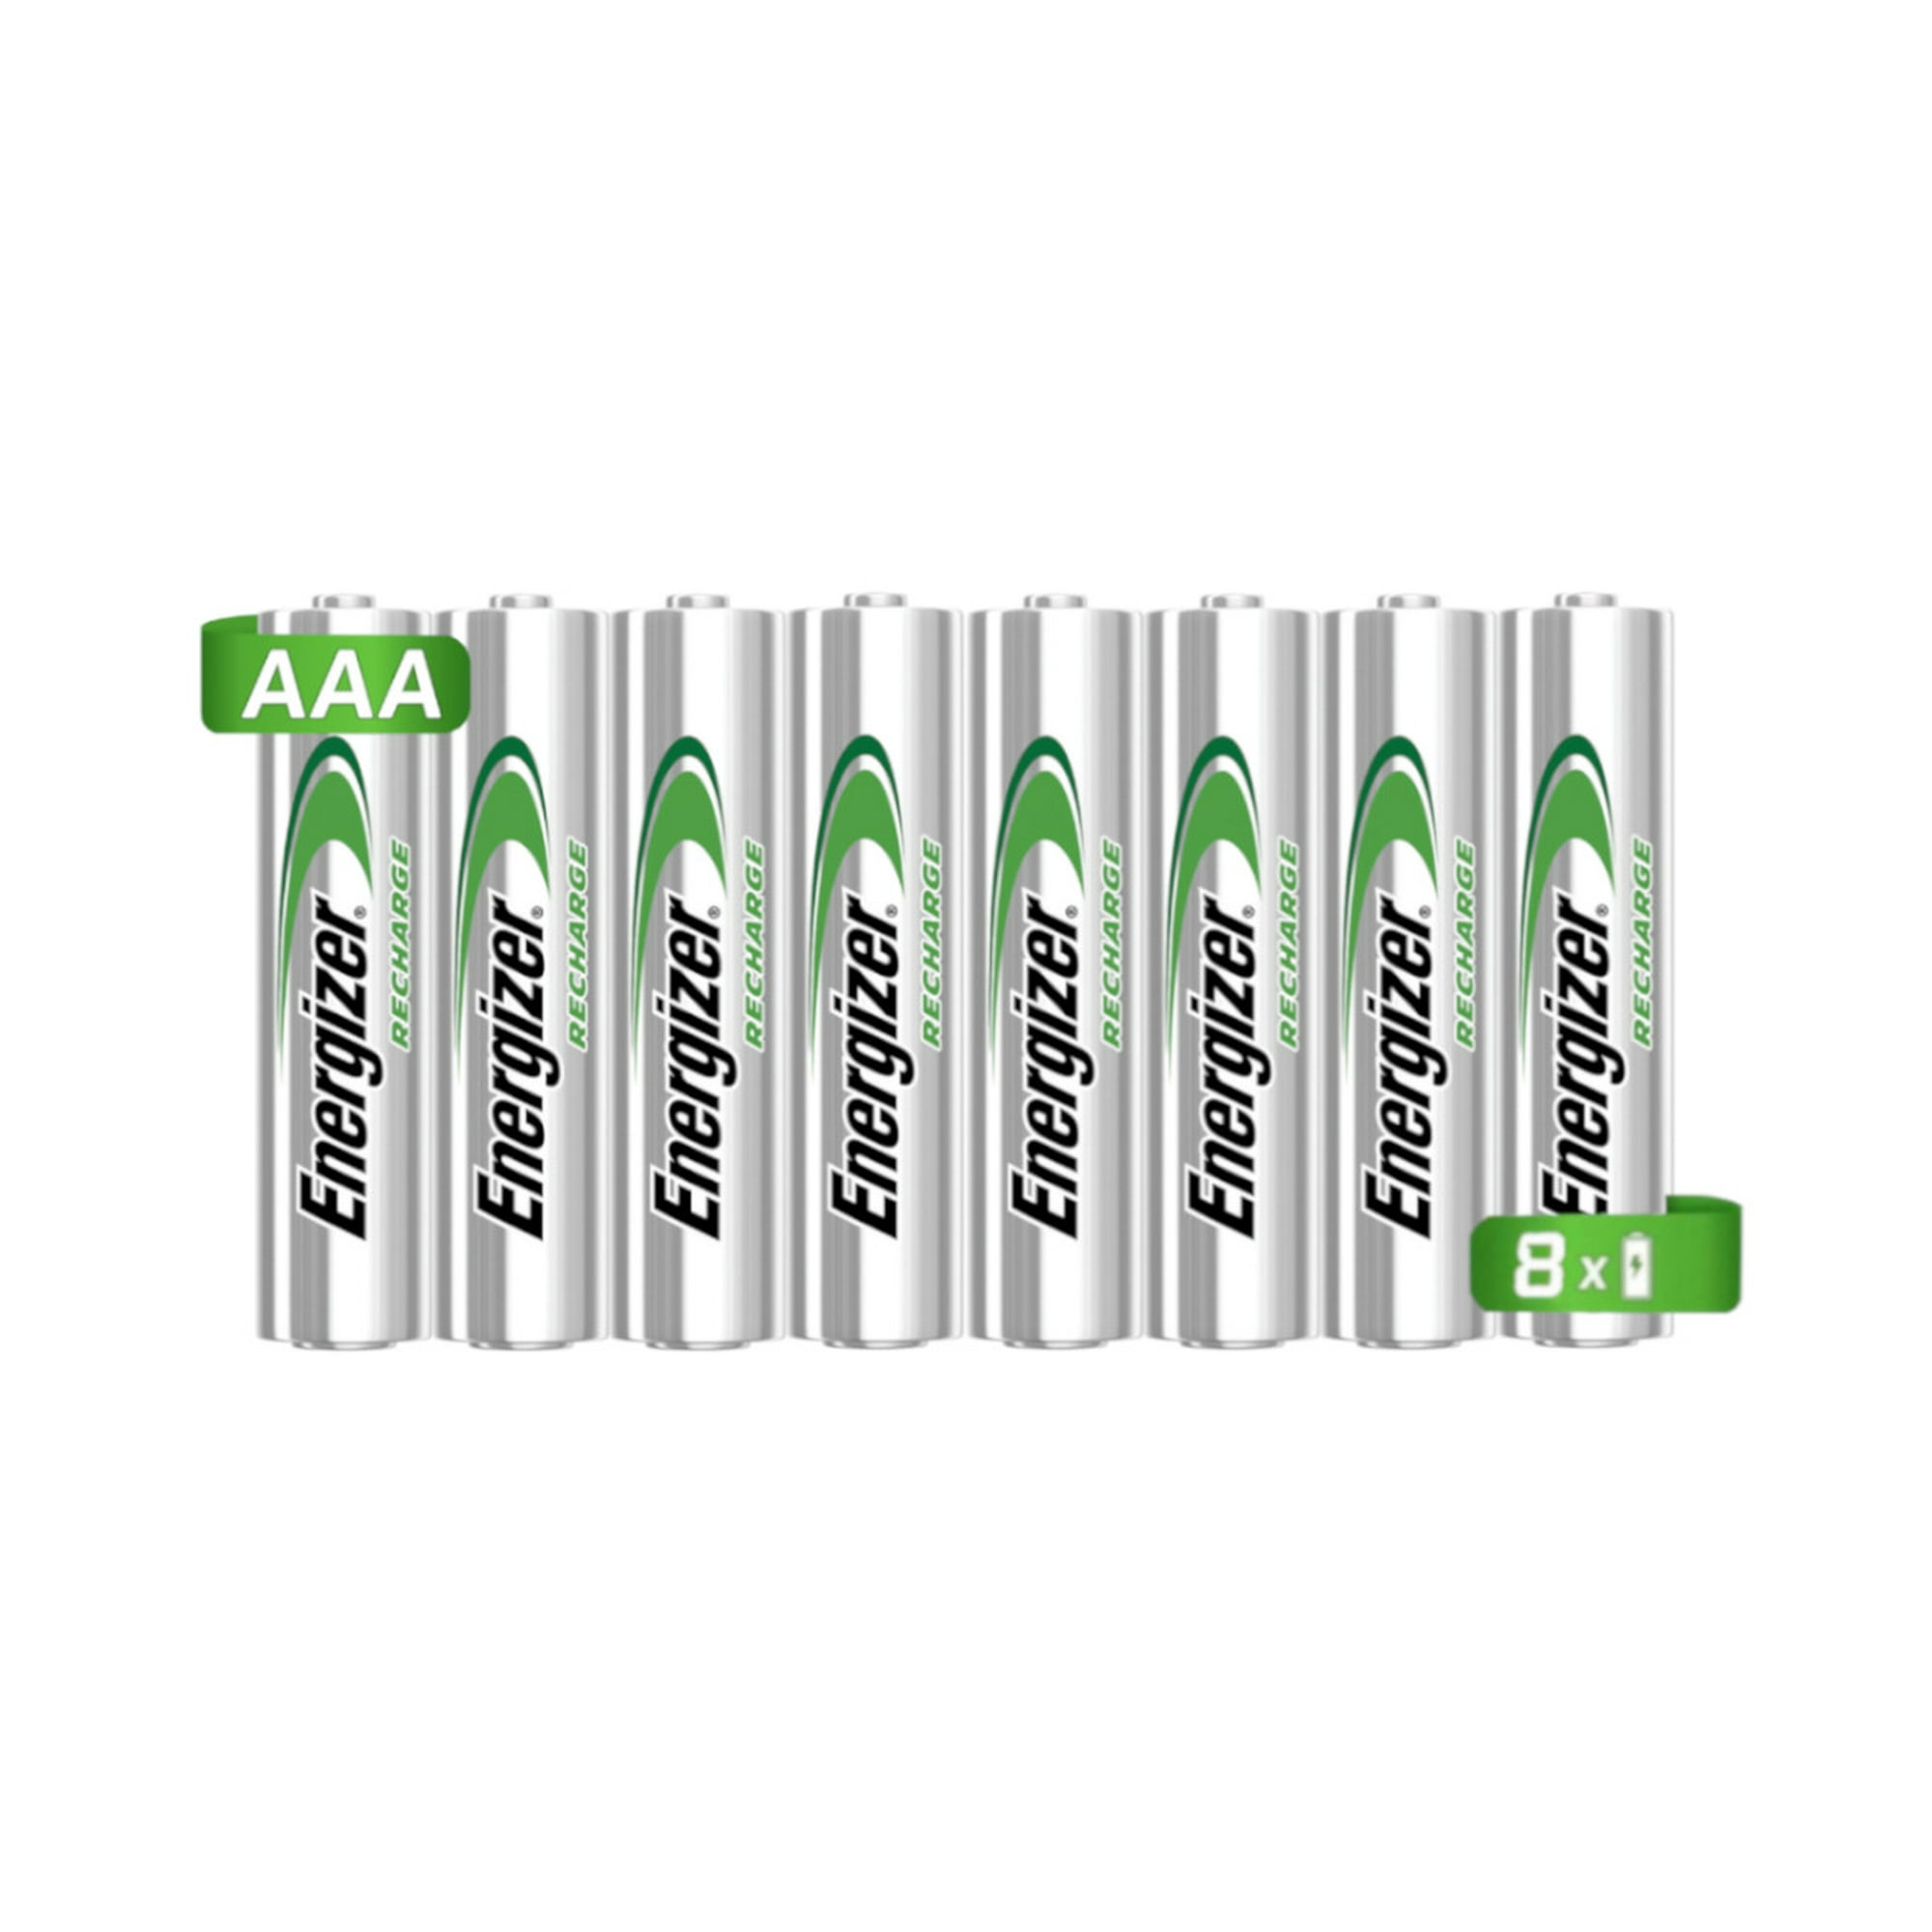 8 Pilas Baterías Recargables Energizer tamaño AAA 800mAh